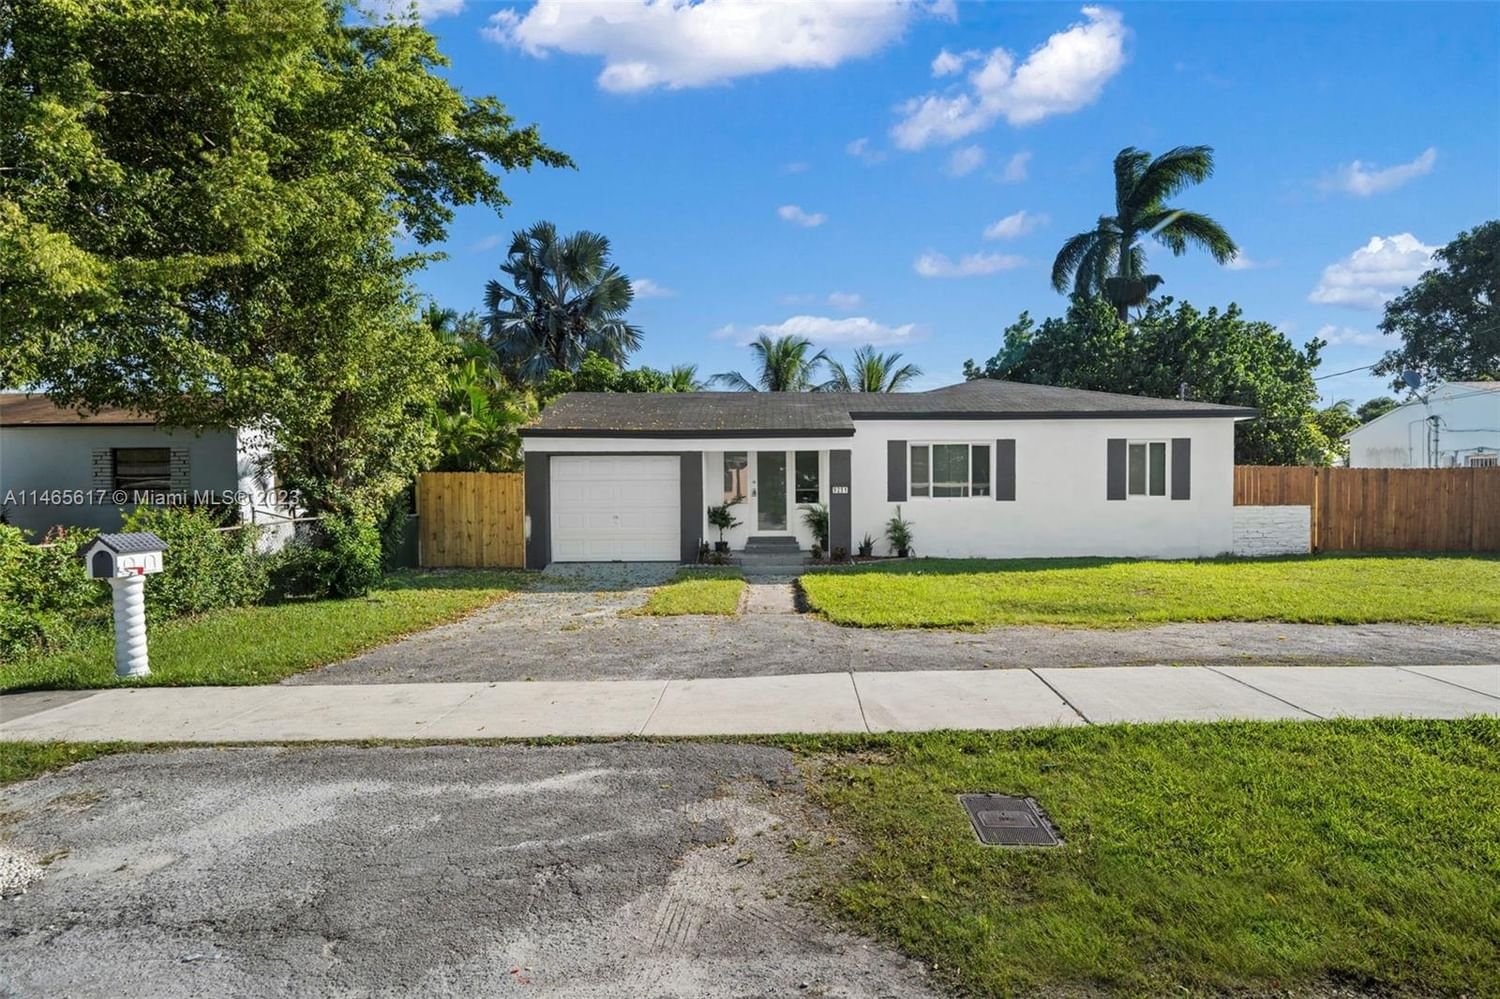 Real estate property located at 9251 Little River Blvd, Miami-Dade County, Miami, FL